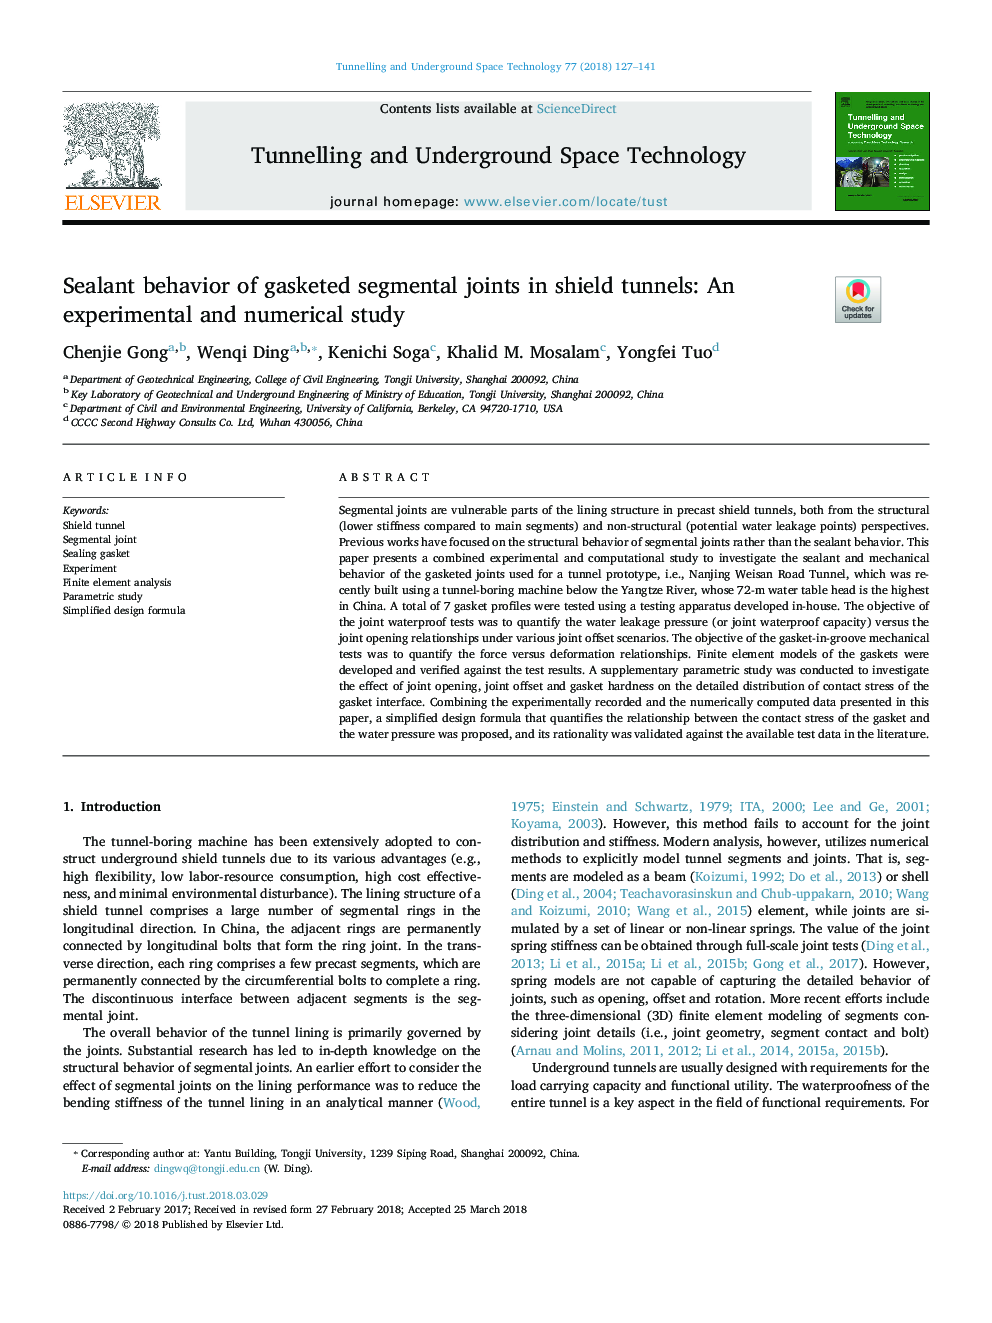 رفتار مهر و موم اتصالات گسسته در تونل های سپر: یک مطالعه تجربی و عددی 